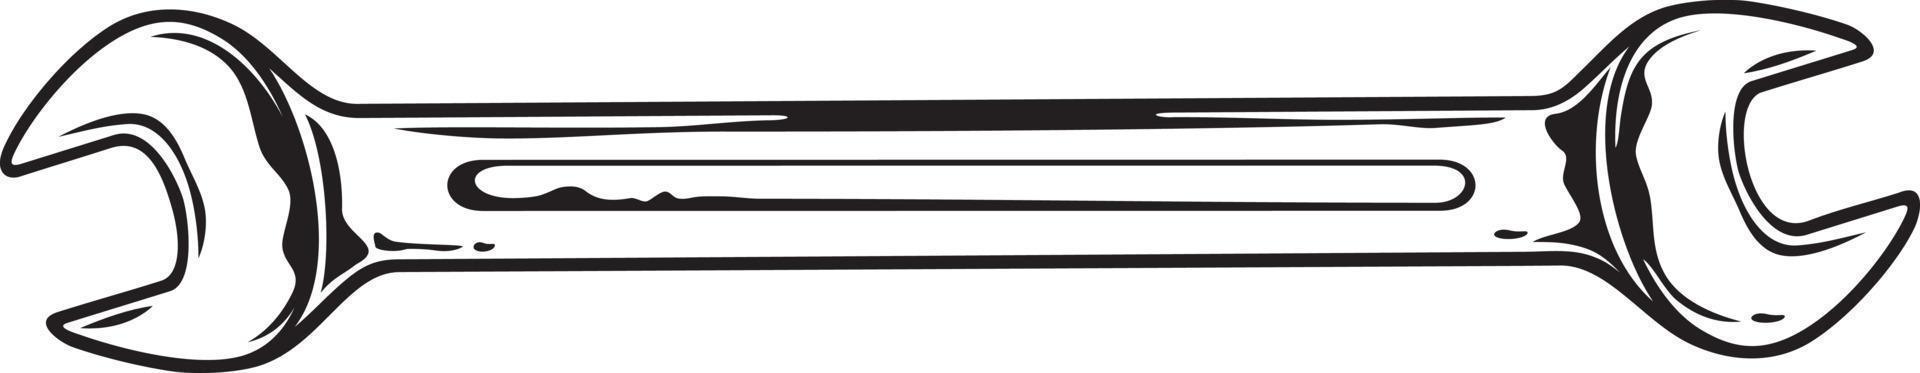 ferramenta chave de mão preto e branco. ilustração vetorial. vetor